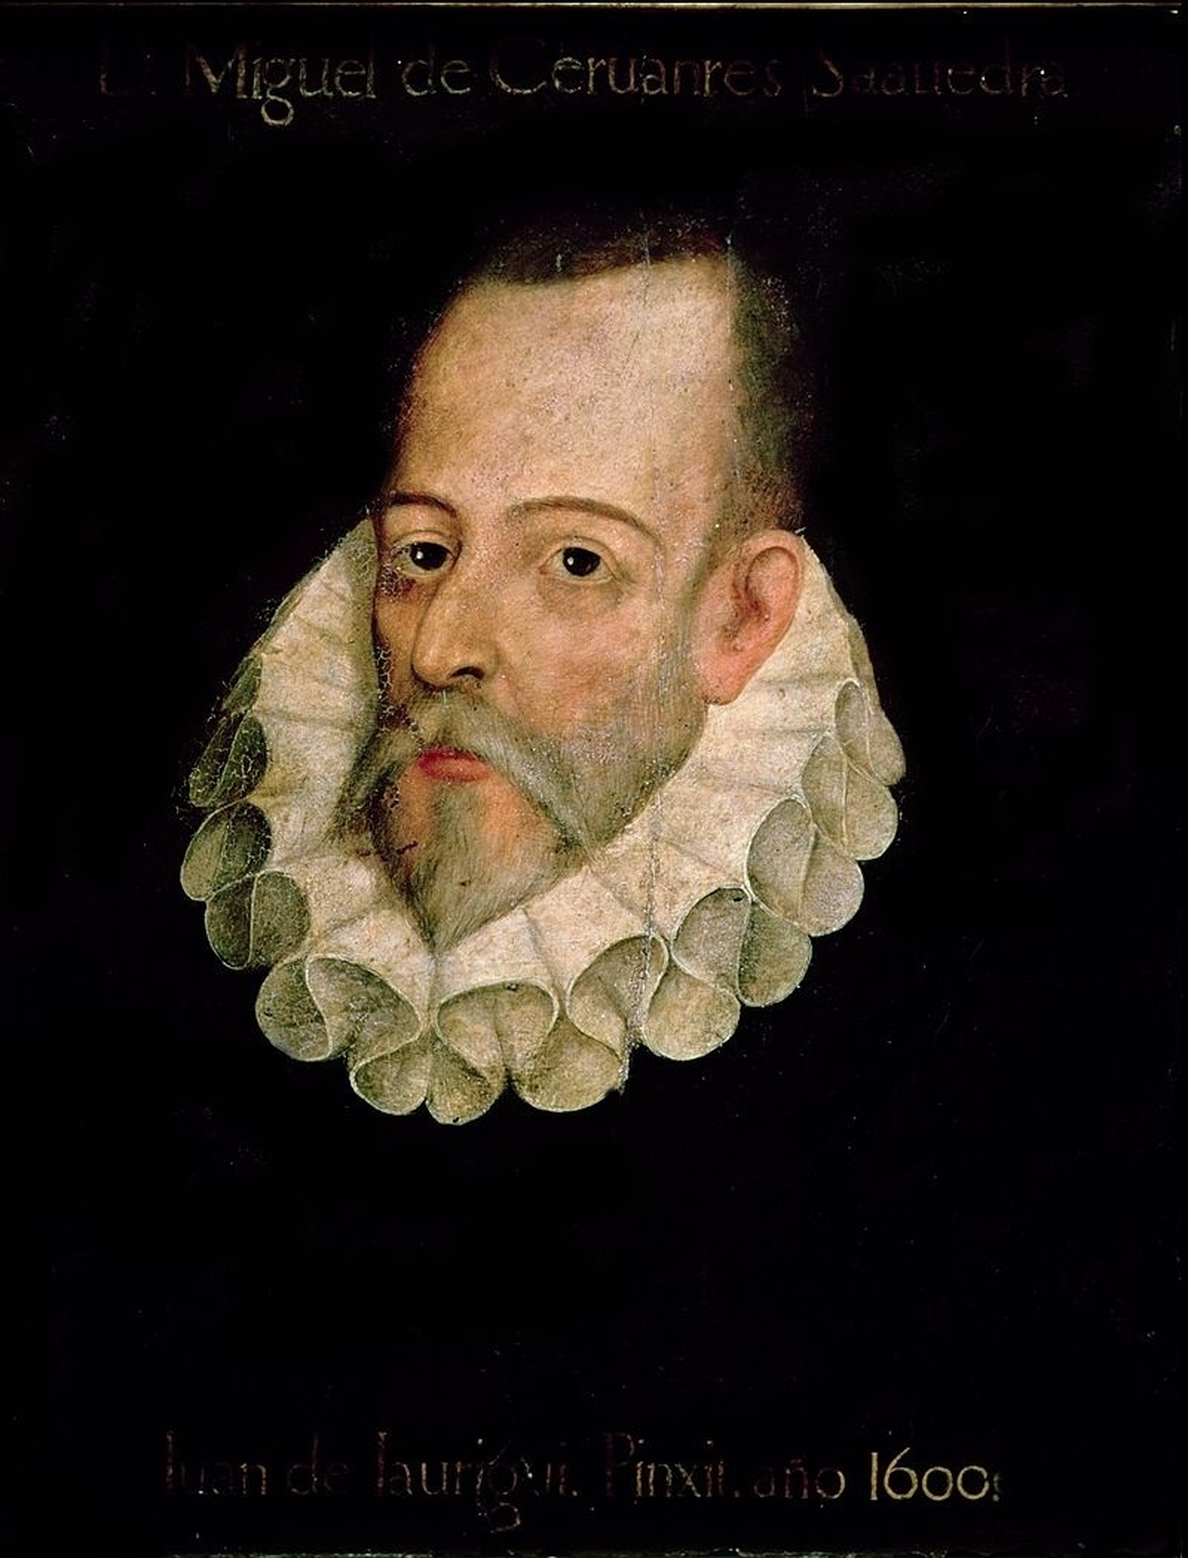 La Biblioteca Nacional dedicará una gran exposición a Miguel de Cervantes en 2016